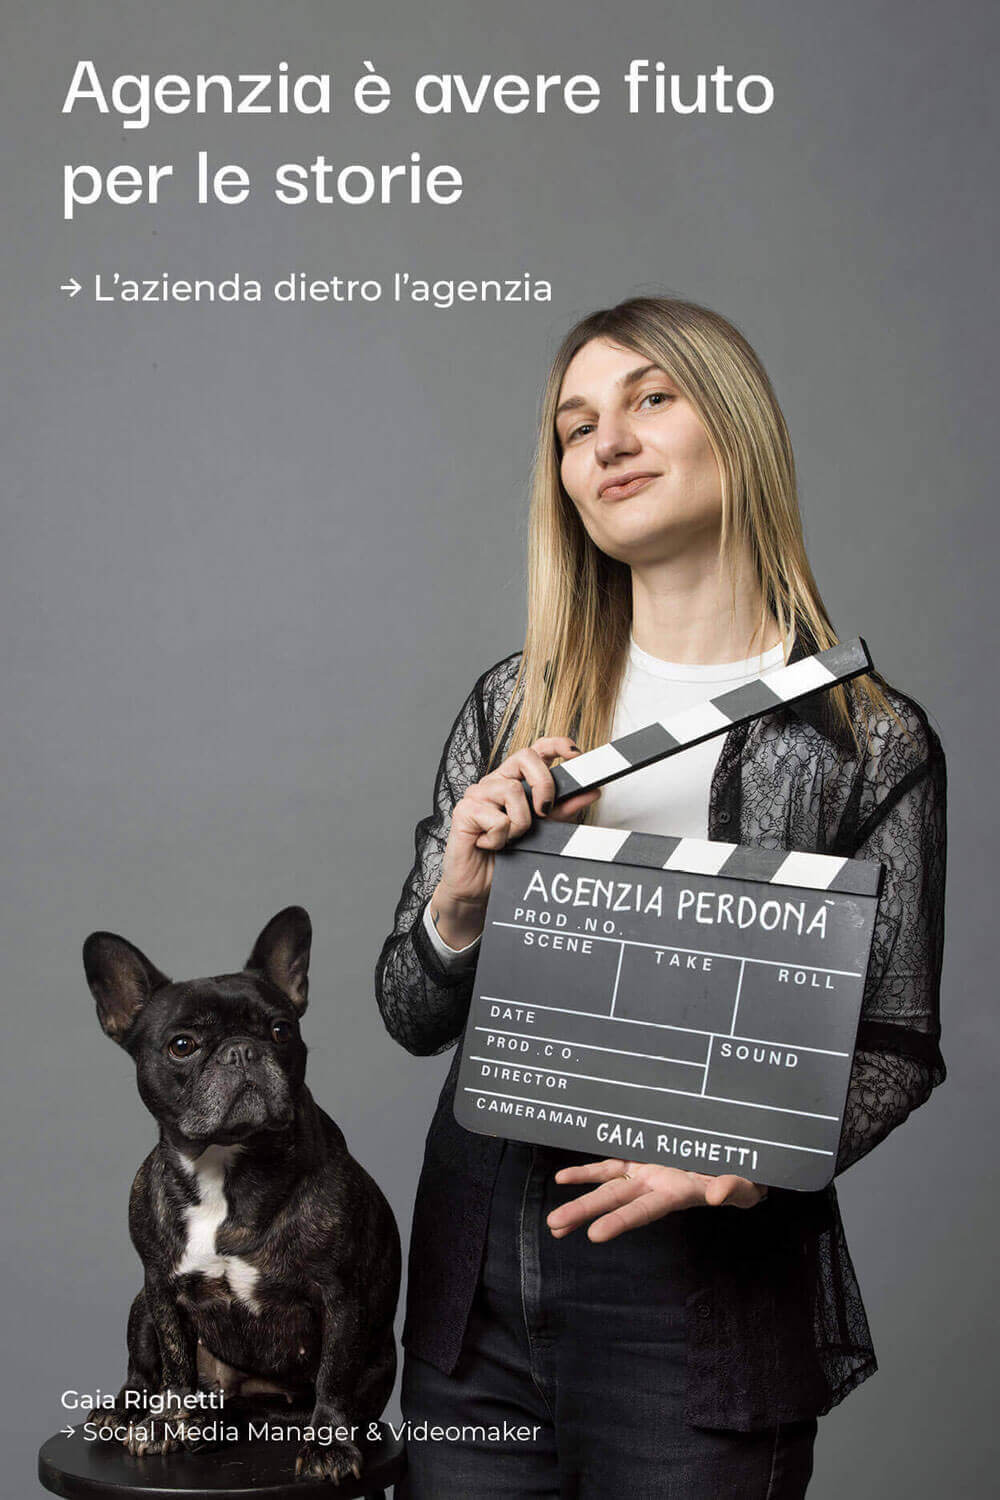 Gaia Righetti